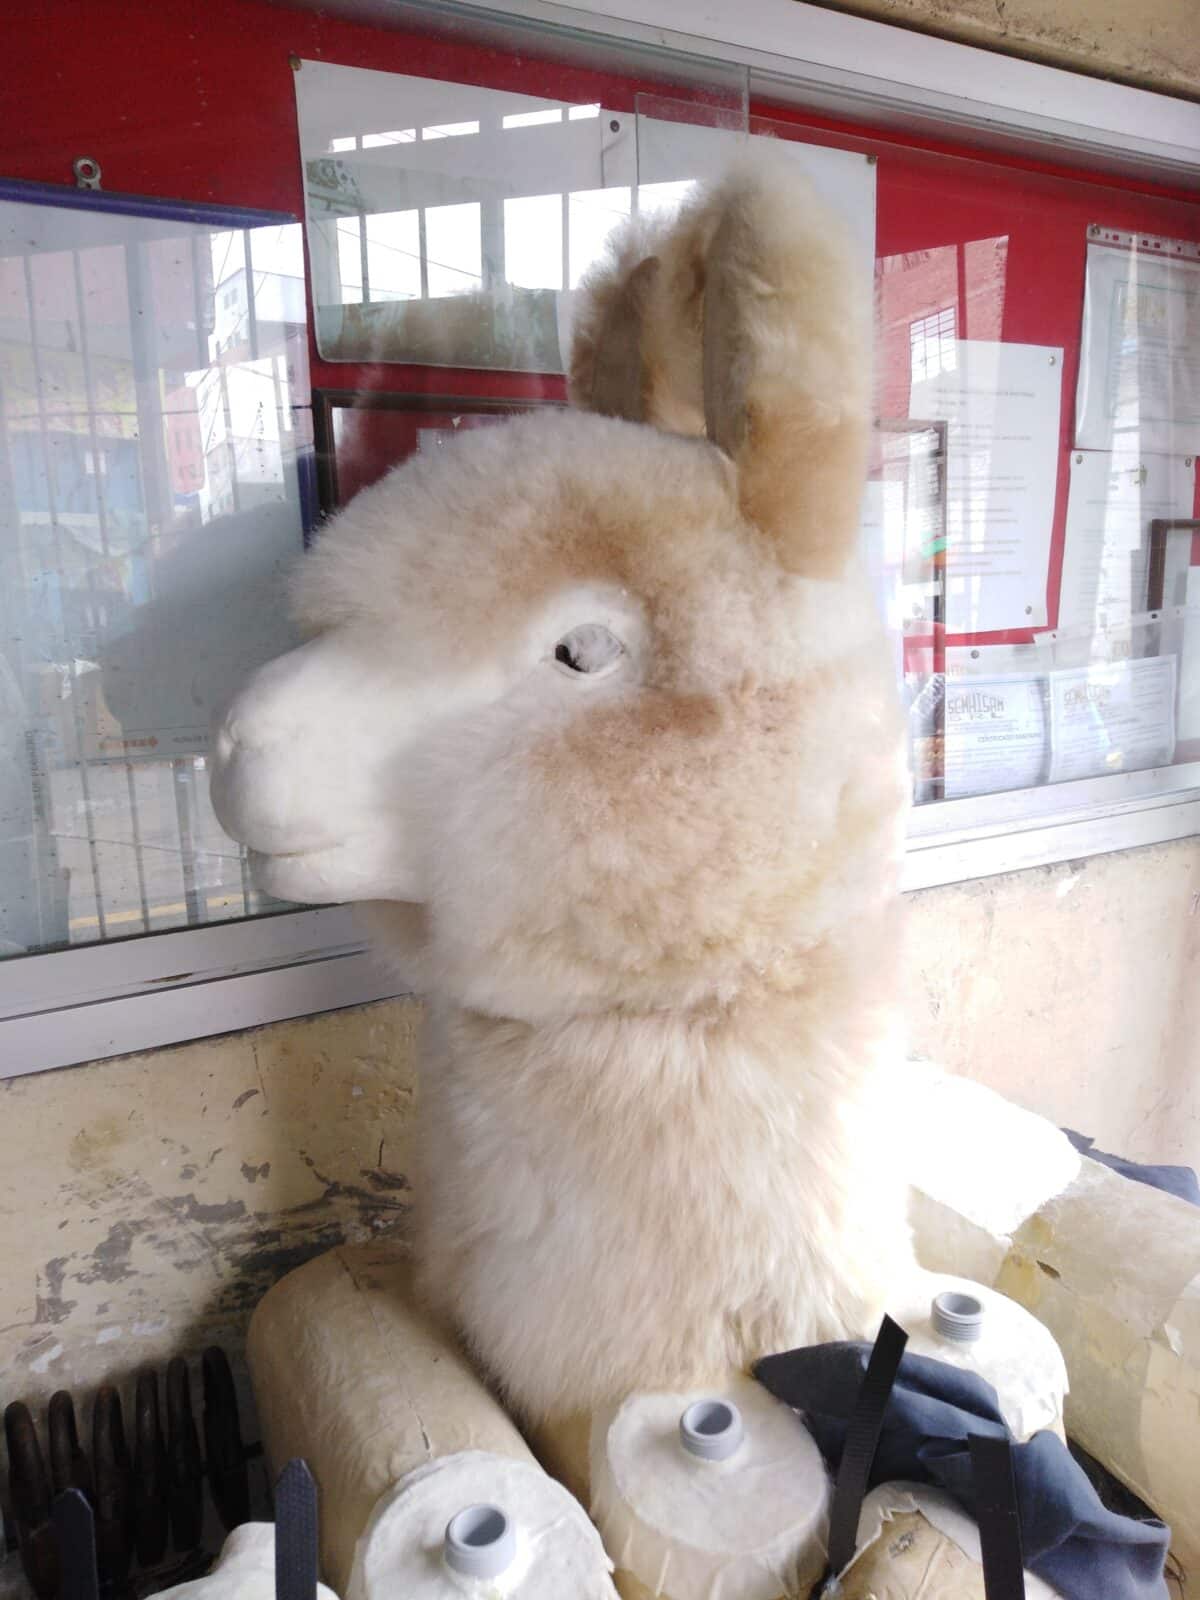 El artista venezolano que creó la alpaca que las Kardashian le regalaron a Paris Hilton